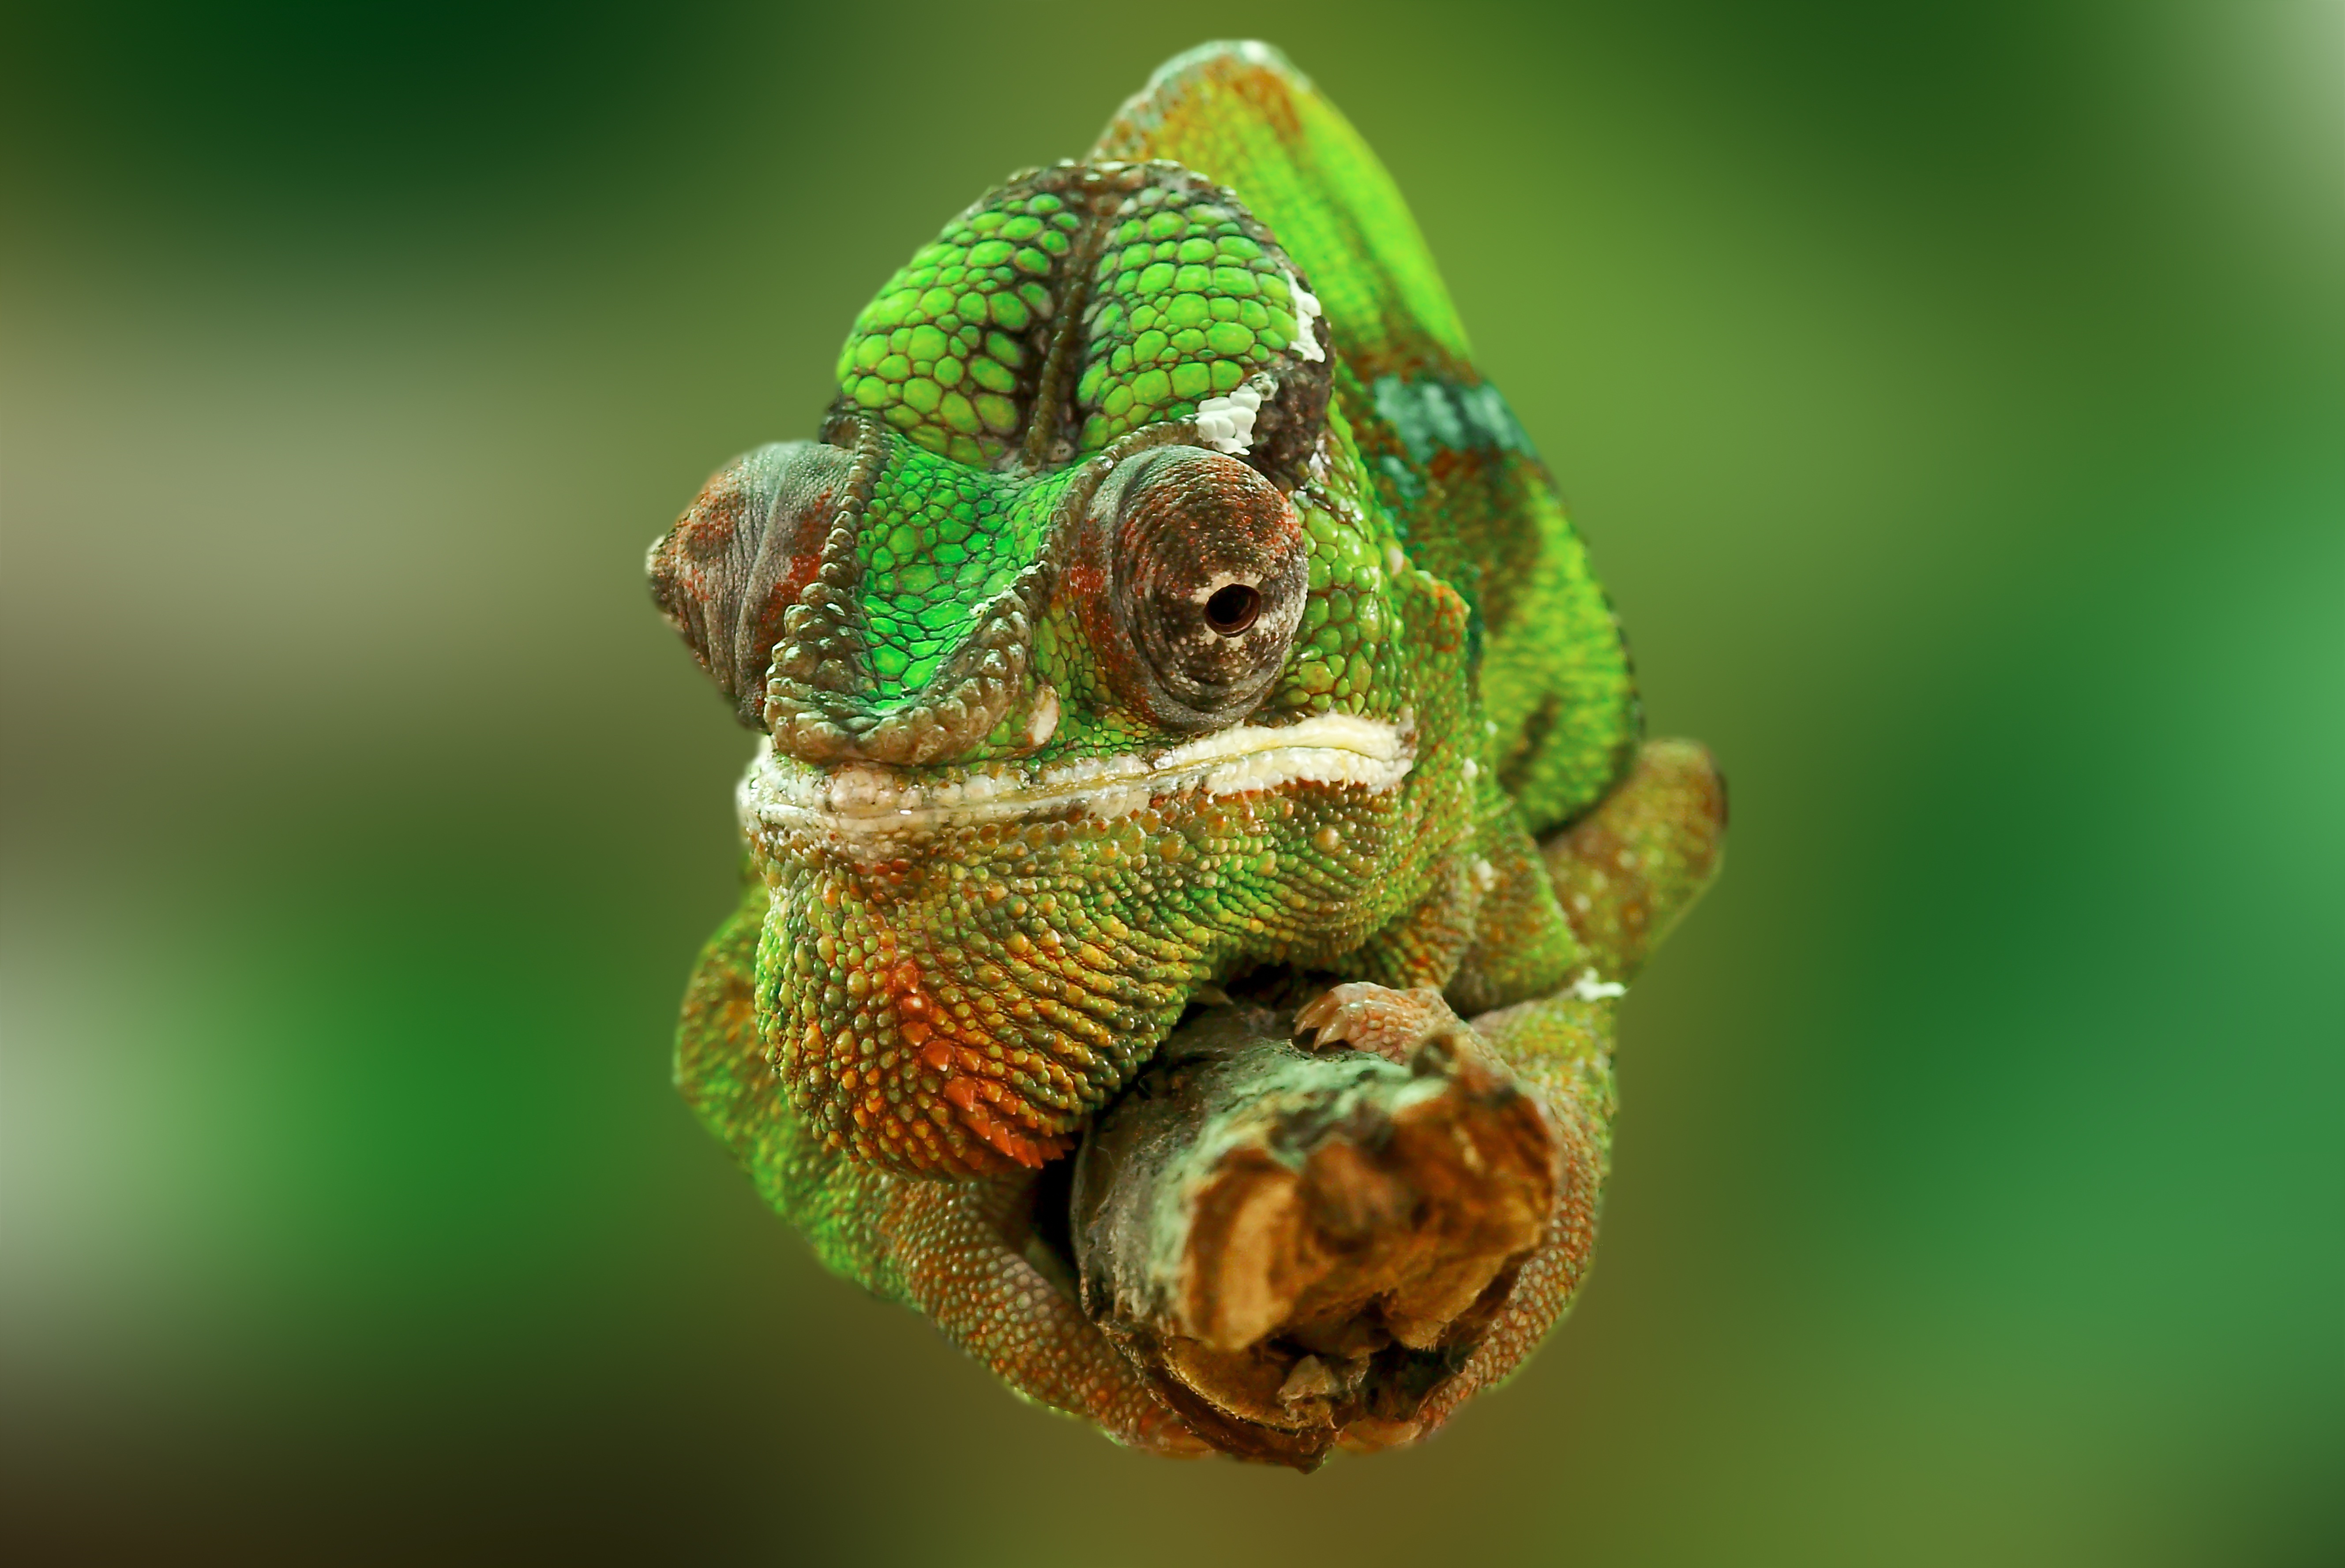 Фото позвоночные голова хамелеон хамелеон - бесплатные картинки на Fonwall